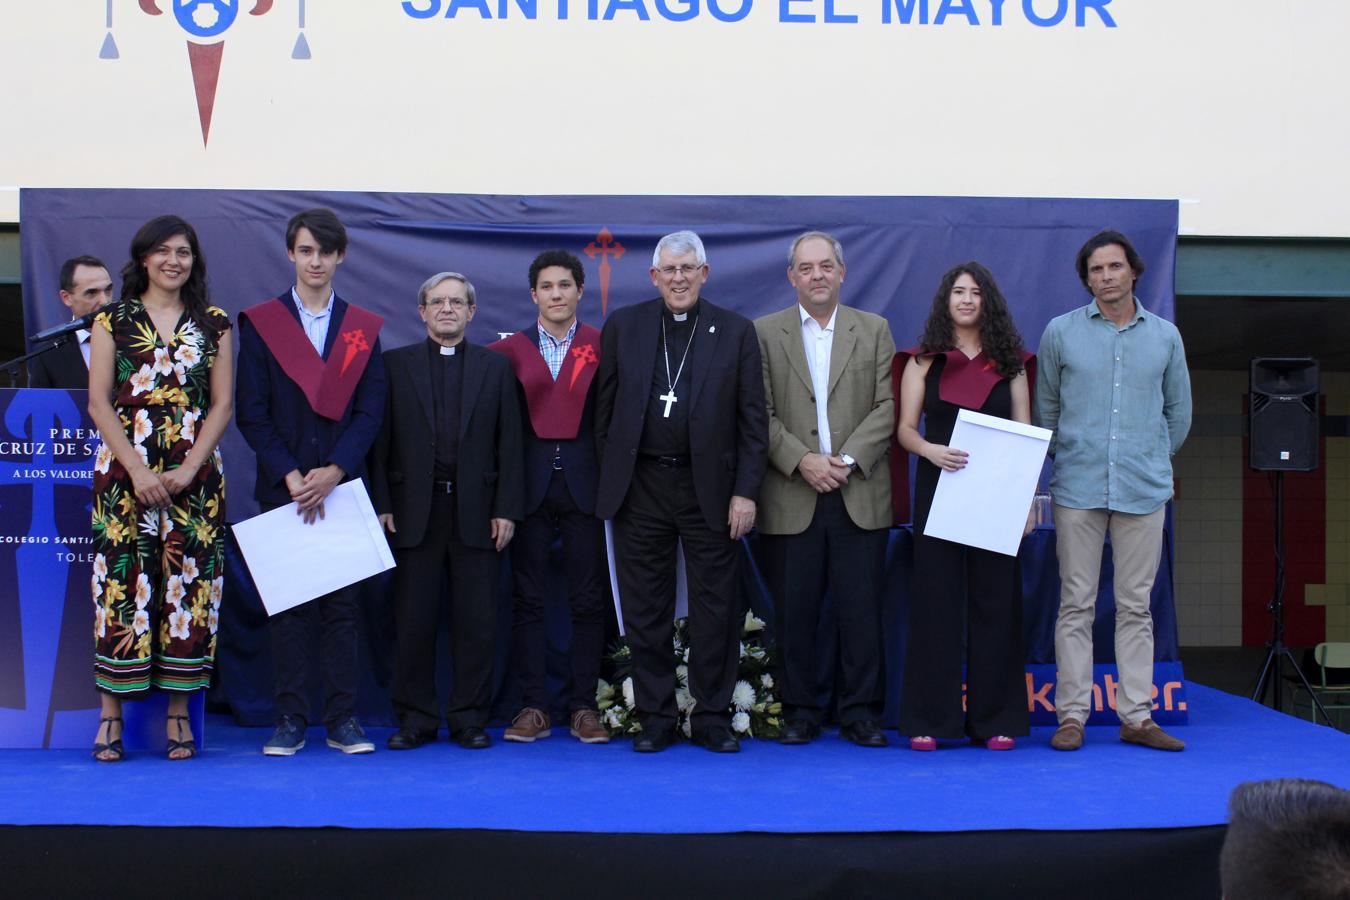 La graduación de los alumnos del colegio Santiago el Mayor de Toledo, en imágenes